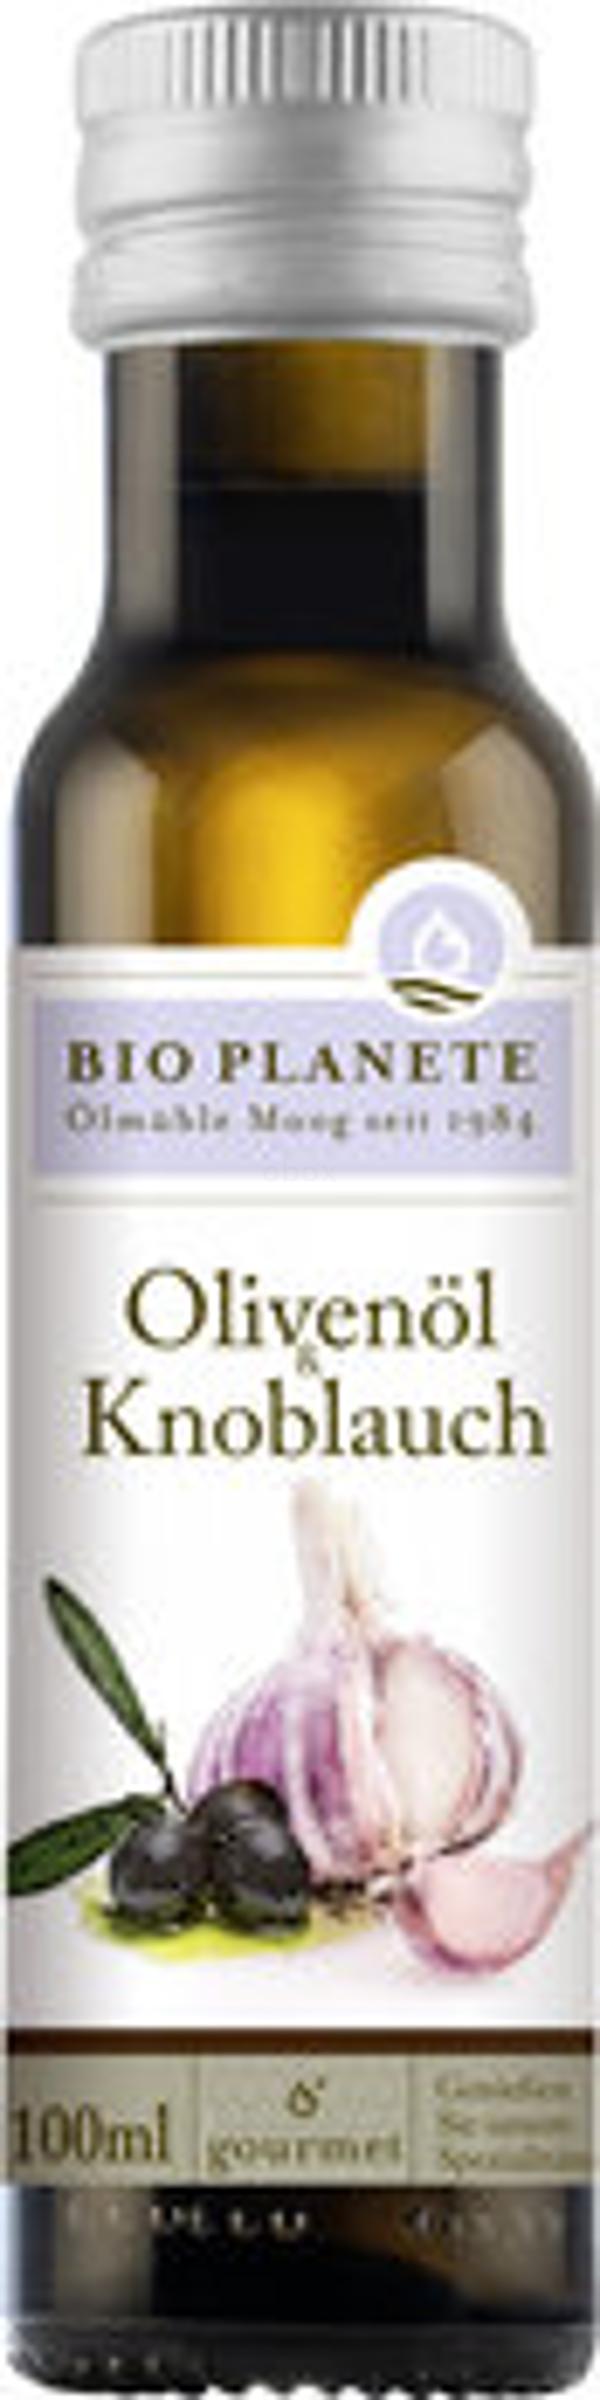 Produktfoto zu Olivenöl & Knoblauch 100ml